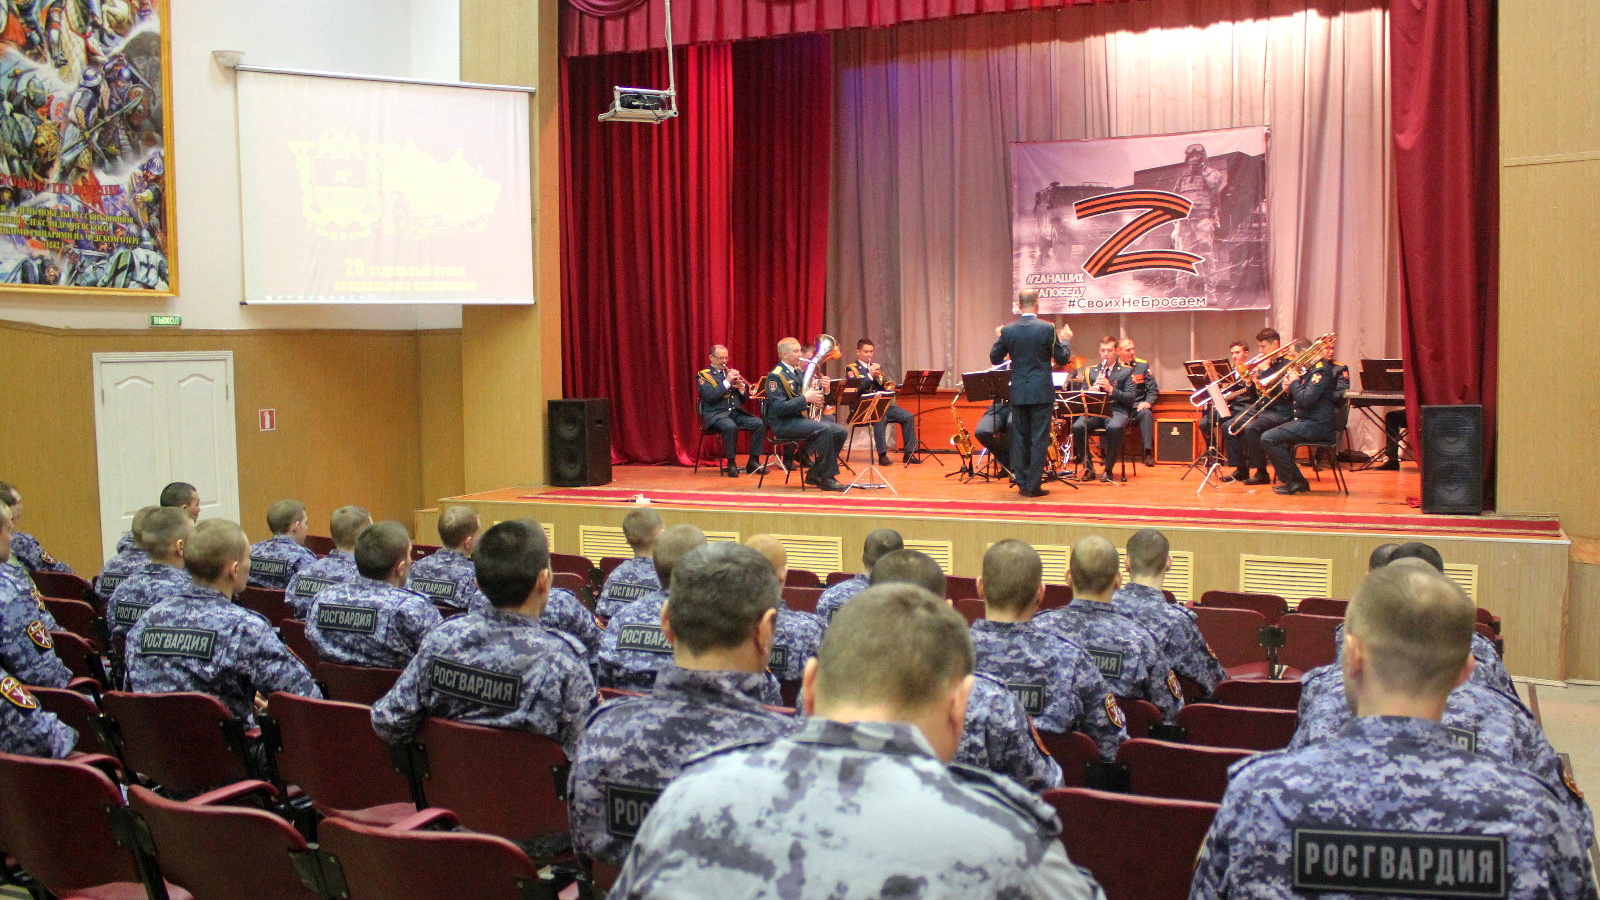 Военный оркестр казанского полка Росгвардии дал концерт для росгвардейцев - стражей порядка «Игр будущего» в Казани